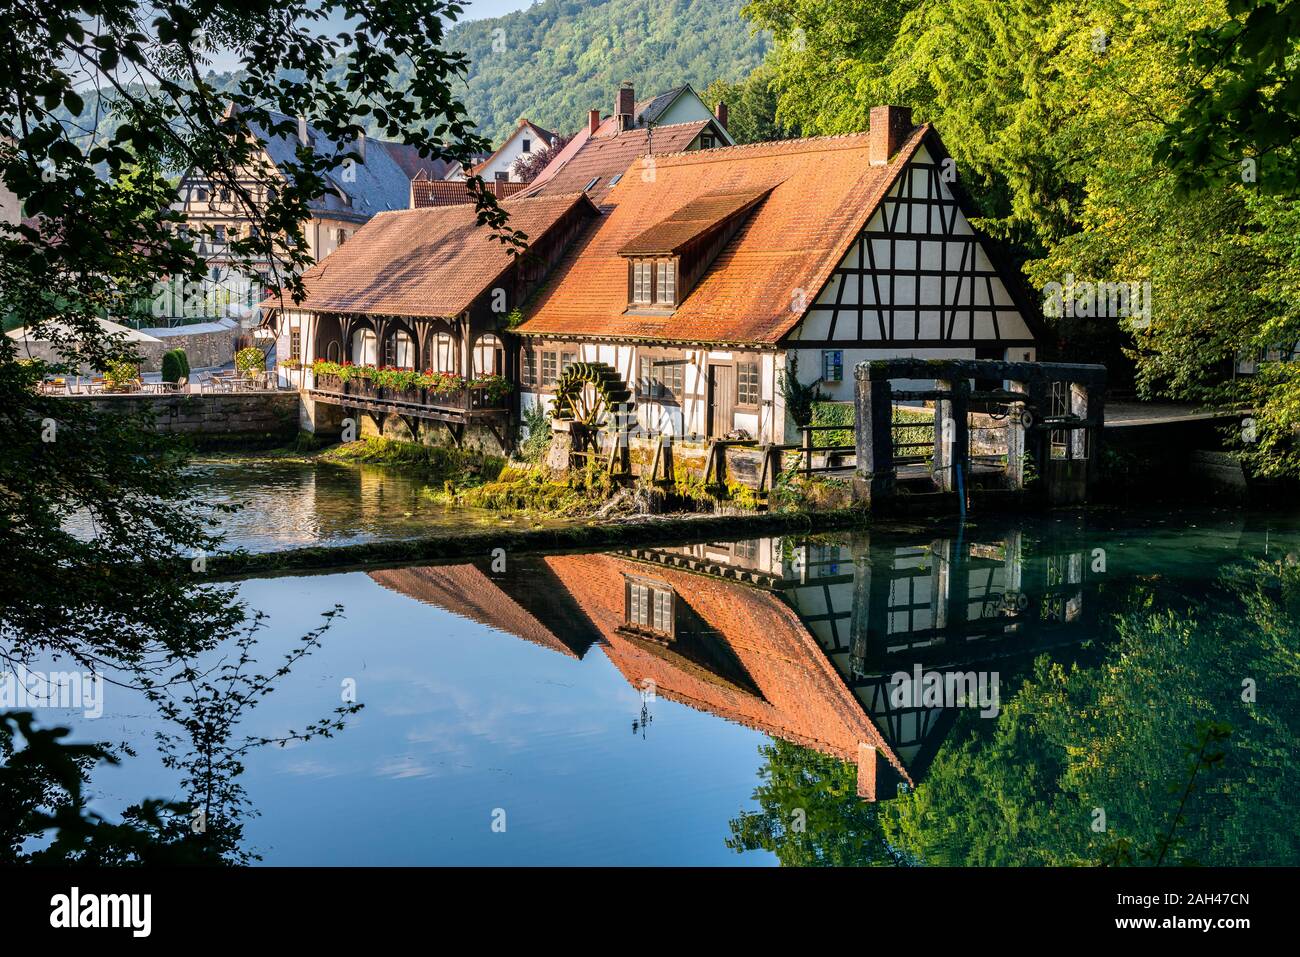 Allemagne, Bade-Wurtemberg, Blaubeuren, chalets se reflétant dans la rivière brillante Banque D'Images